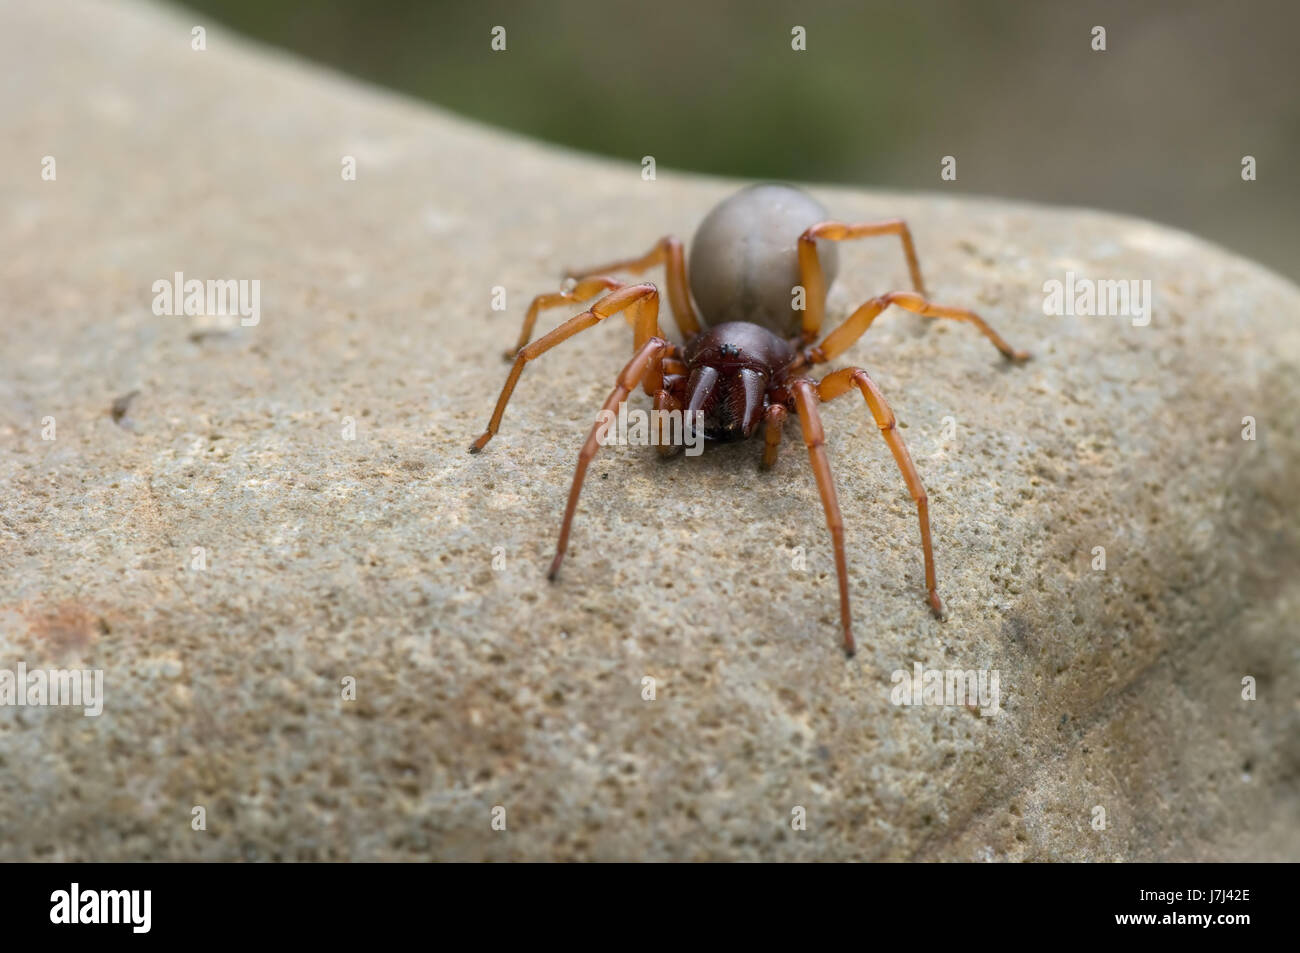 Animali ragno insetto predatore bandit raider macro close-up di ammissione macro Foto Stock